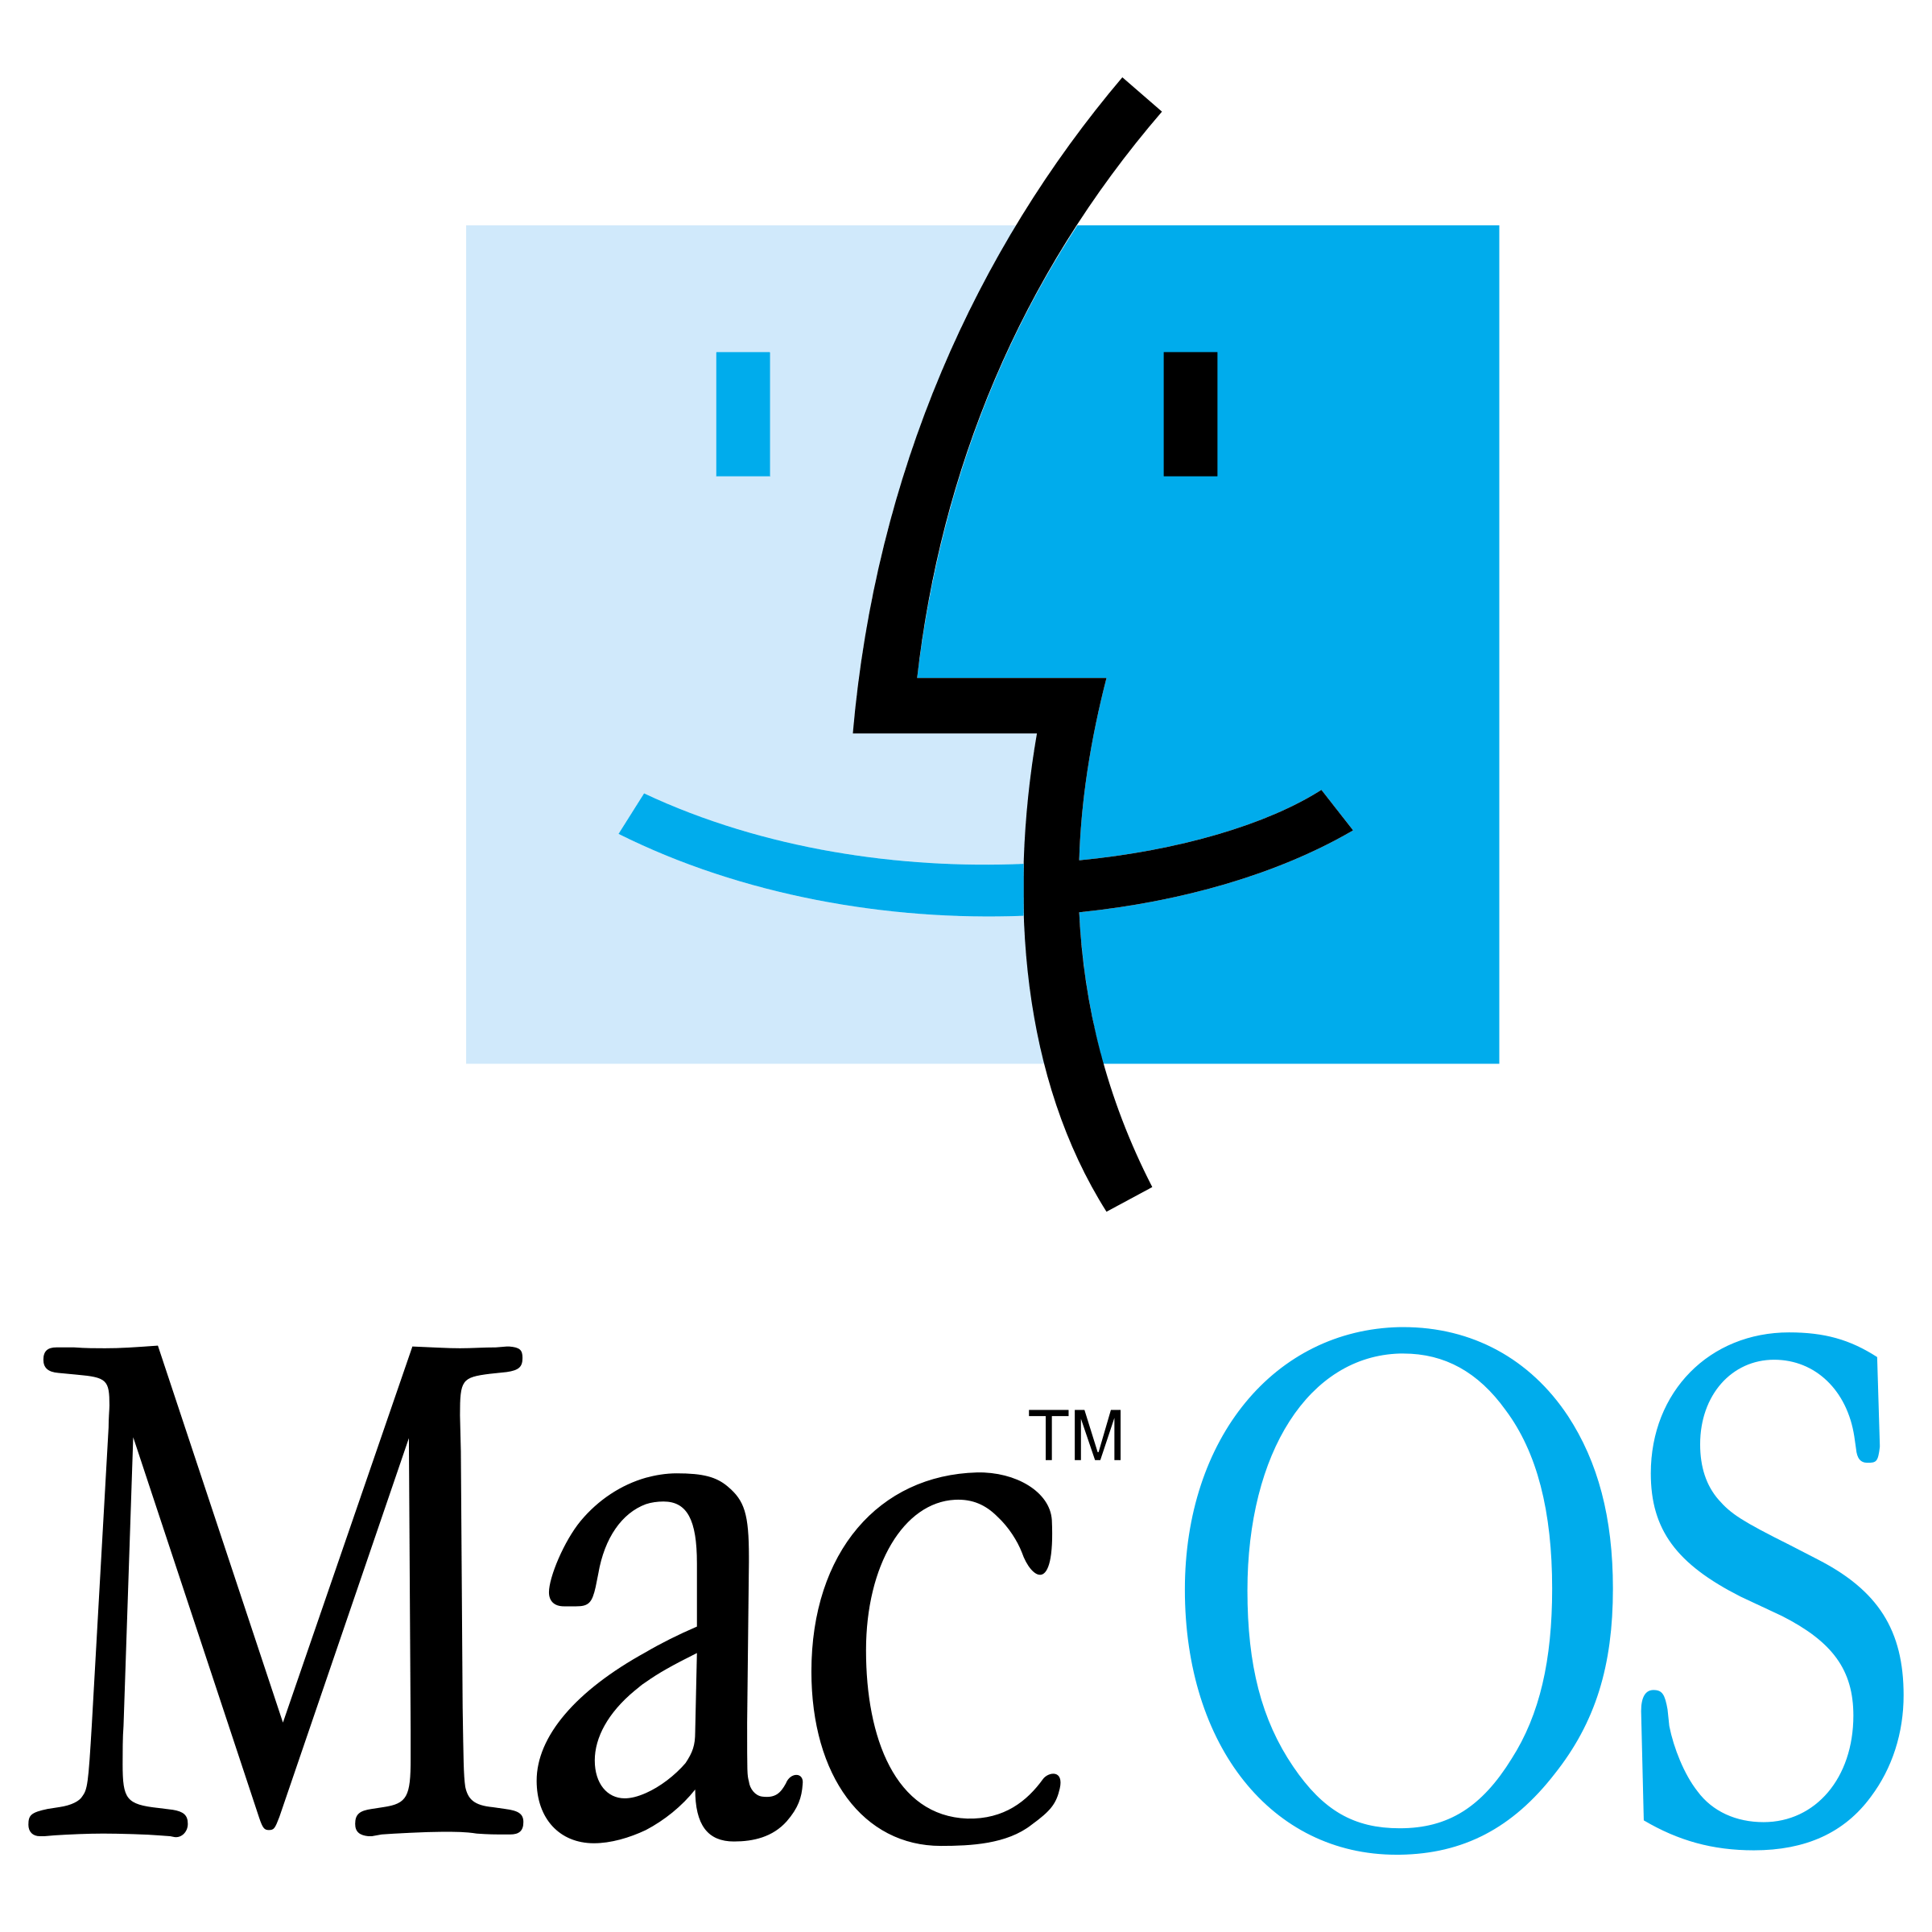 OS Logo - Mac OS Logo PNG Transparent & SVG Vector